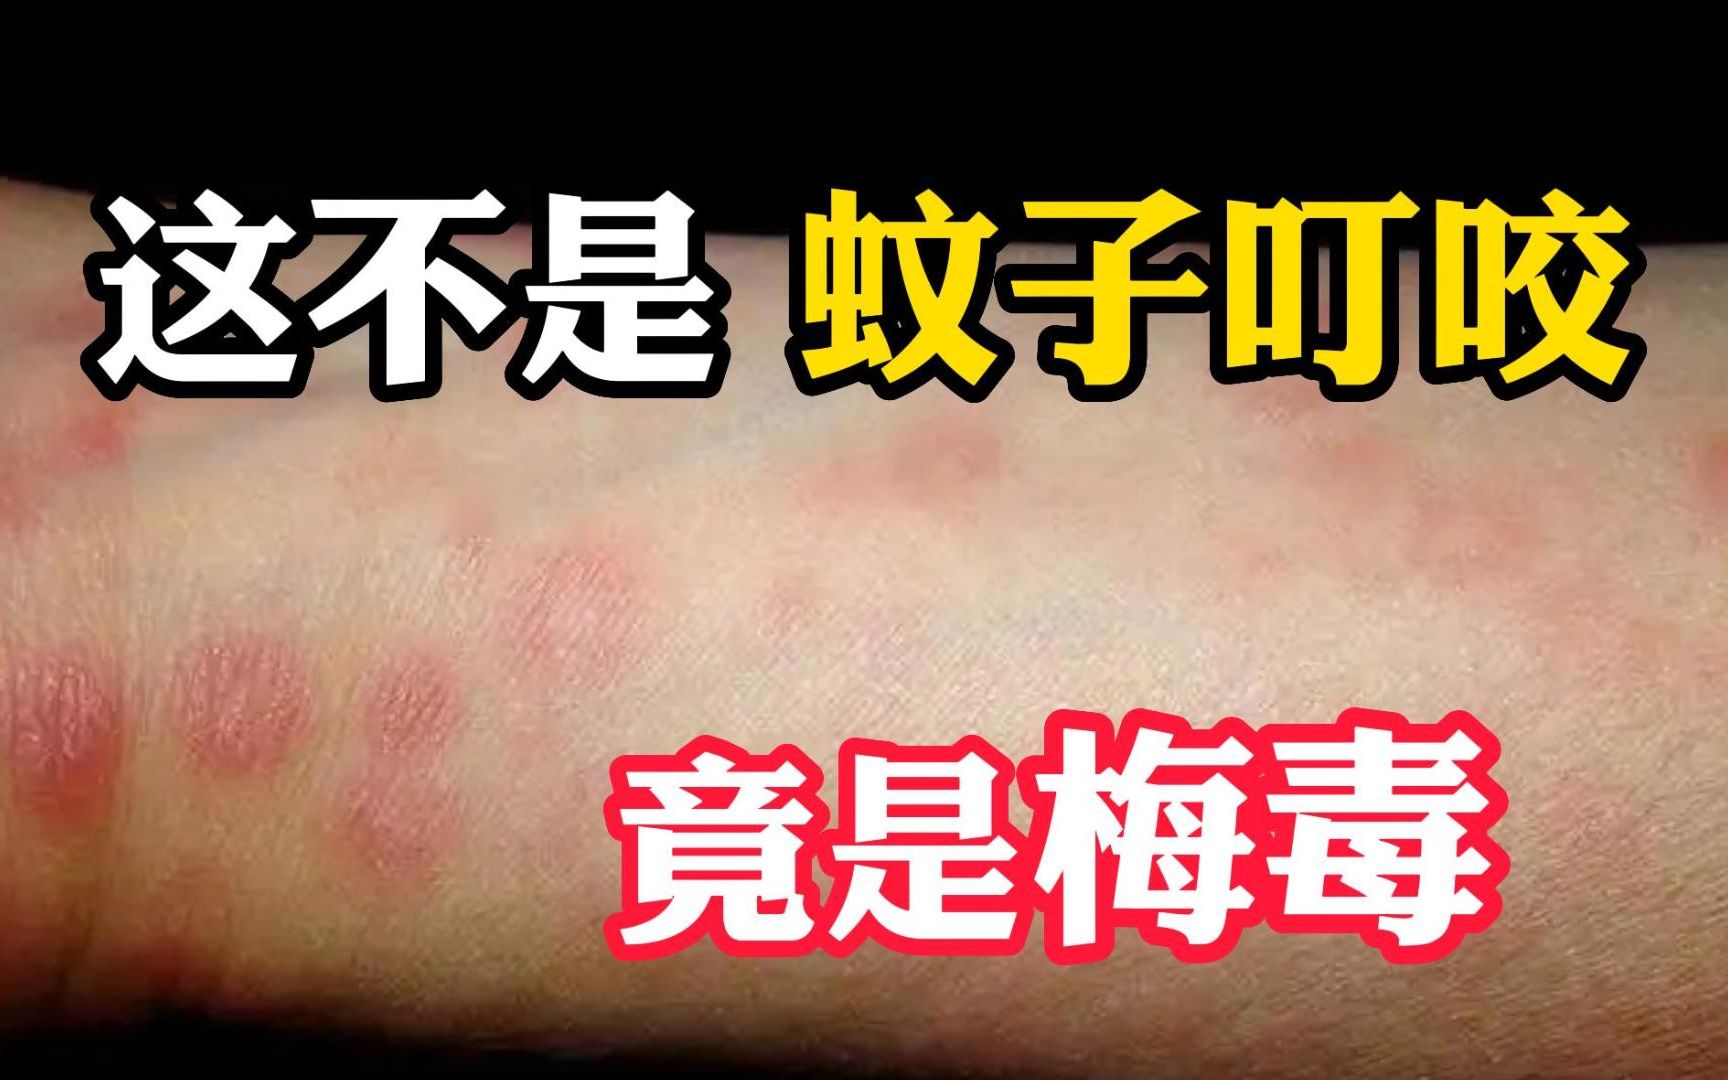 身上这长这种小红点，不是过敏！是梅毒？#皮肤  #健康  #科普